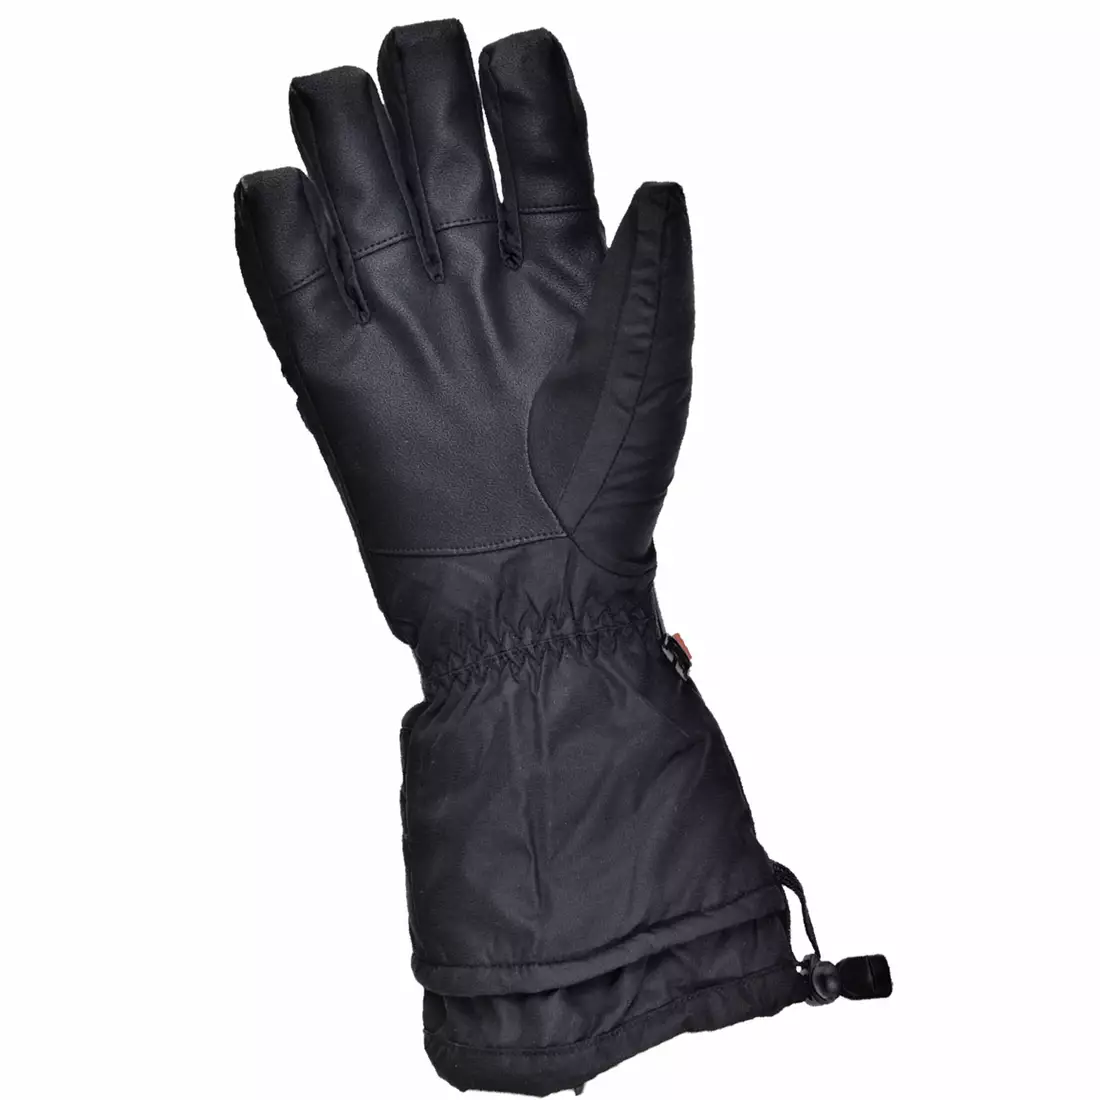 KOMBI PIONEER GLOVE ski gloves, wool K55581